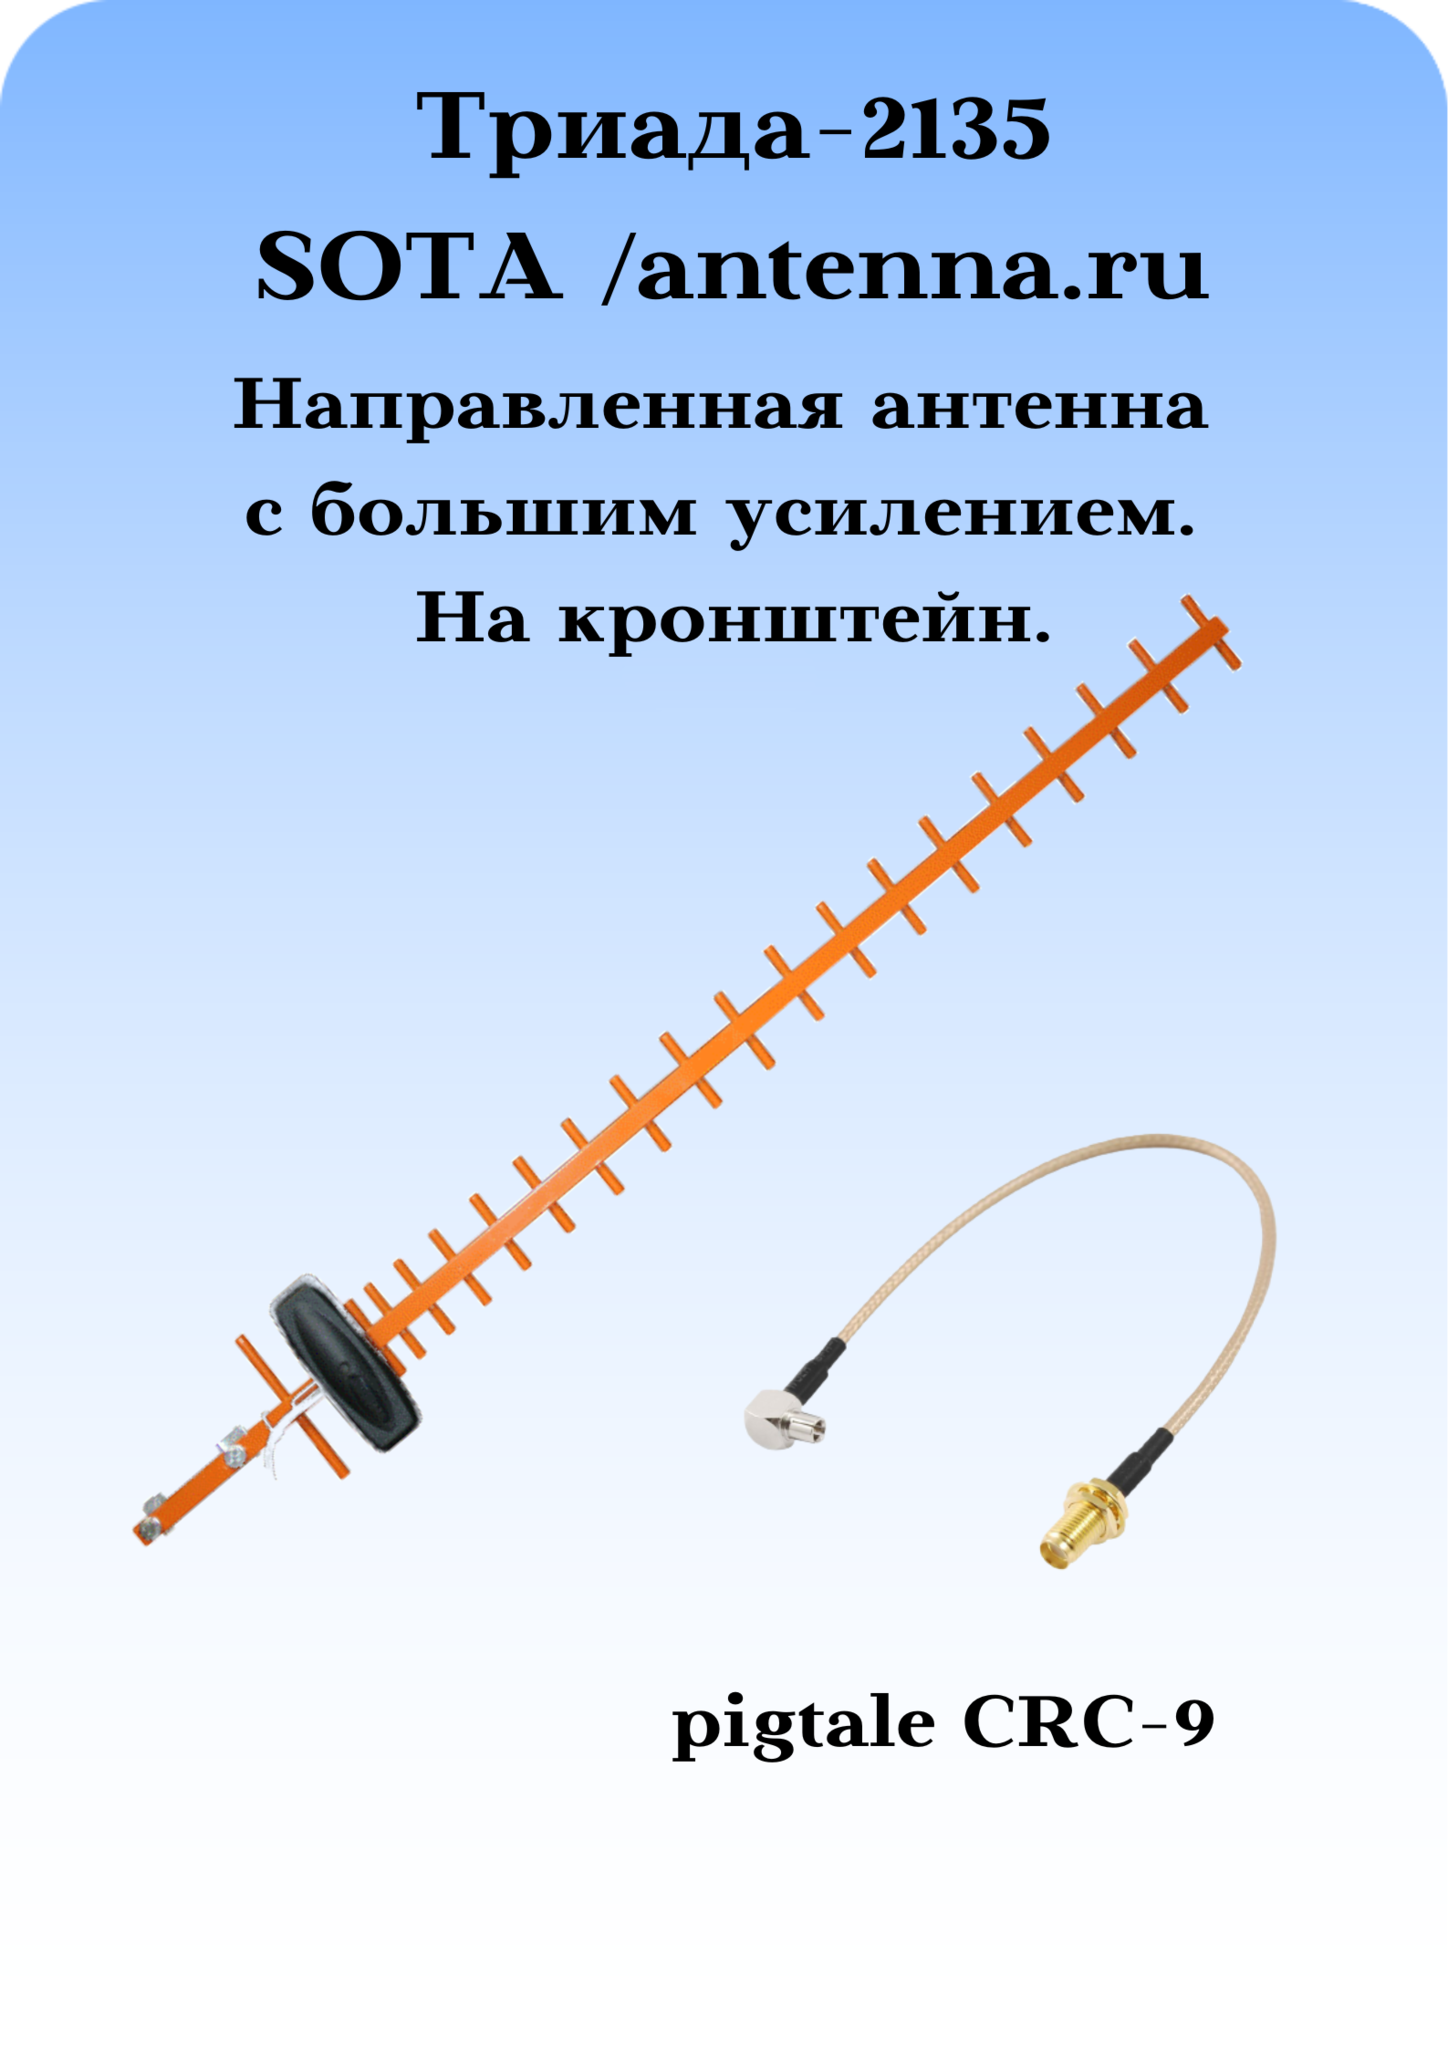 Триада-2135 SOTA/antenna.ru. Антенна 3G/1800МГц направленная, на кронштейн с большим усилением